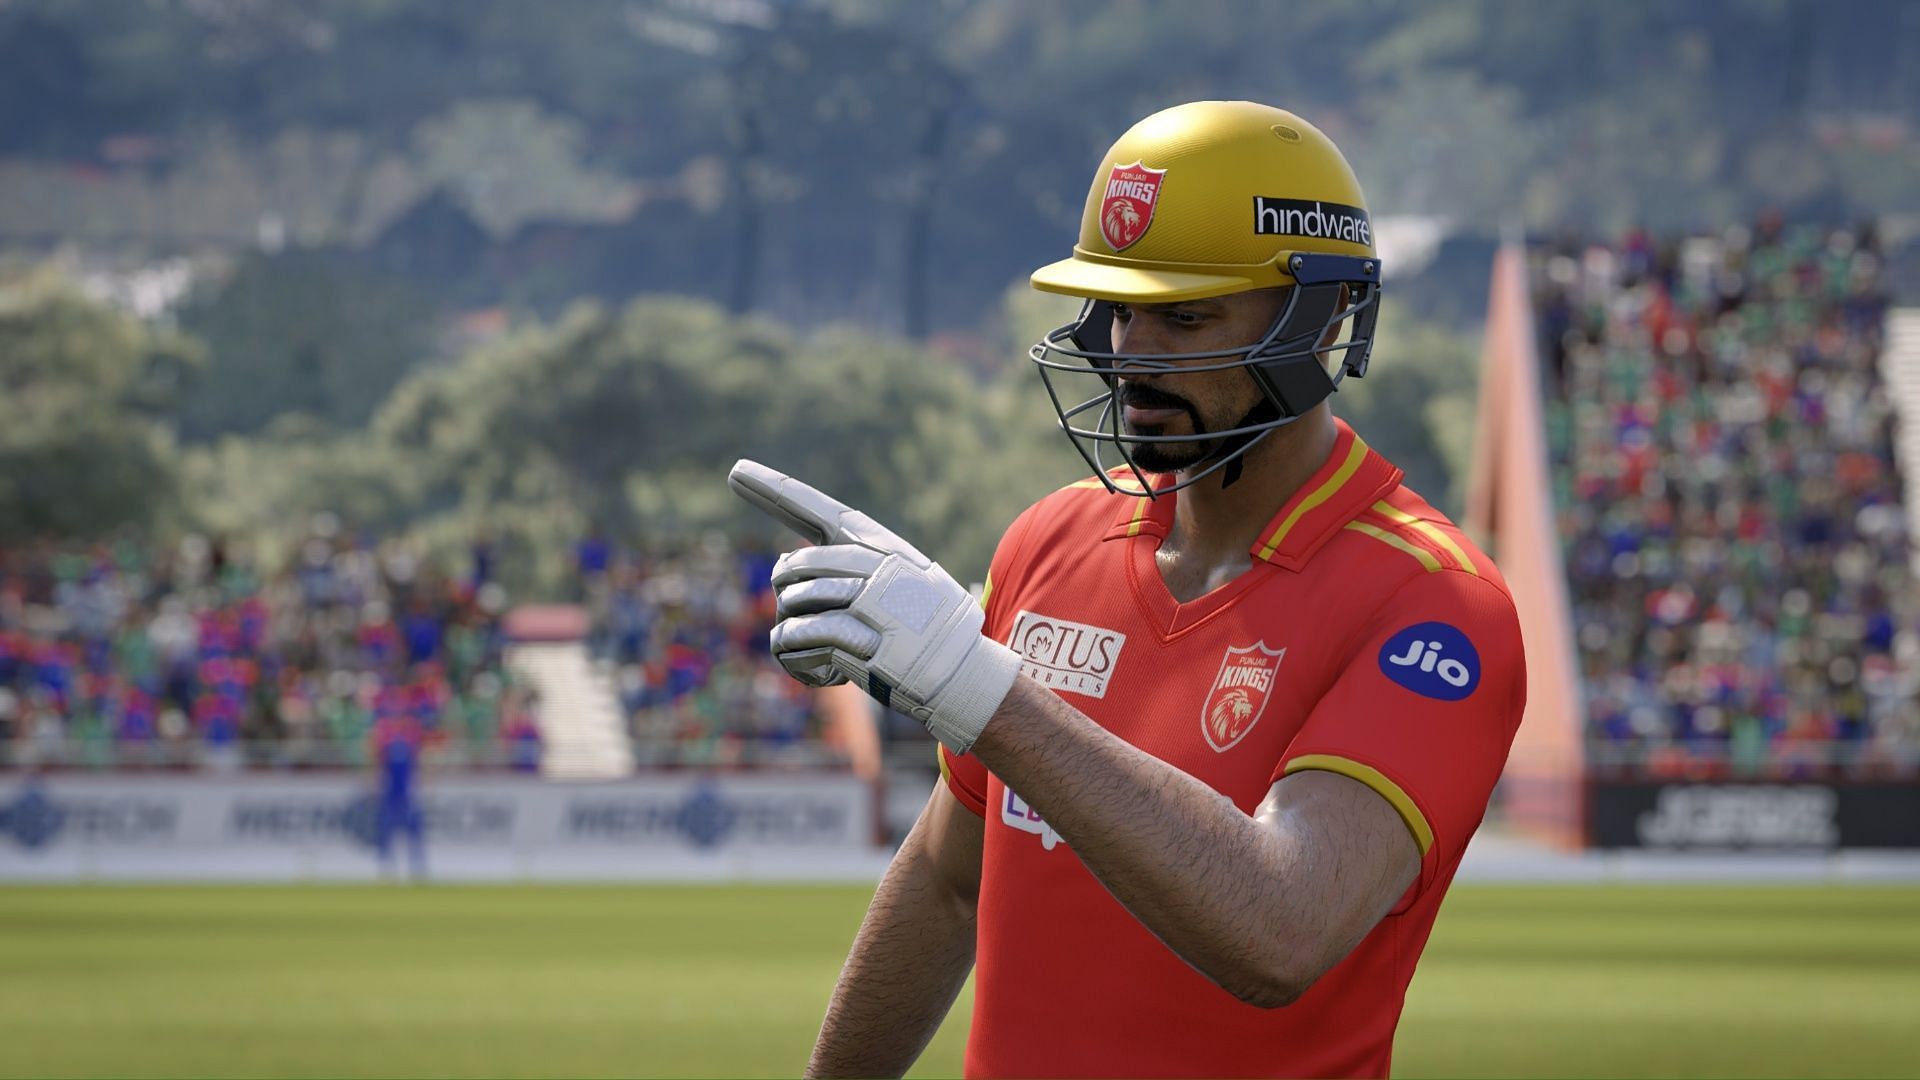 Cricket 24 will have several IPL teams (Image via Big Ant Studios)